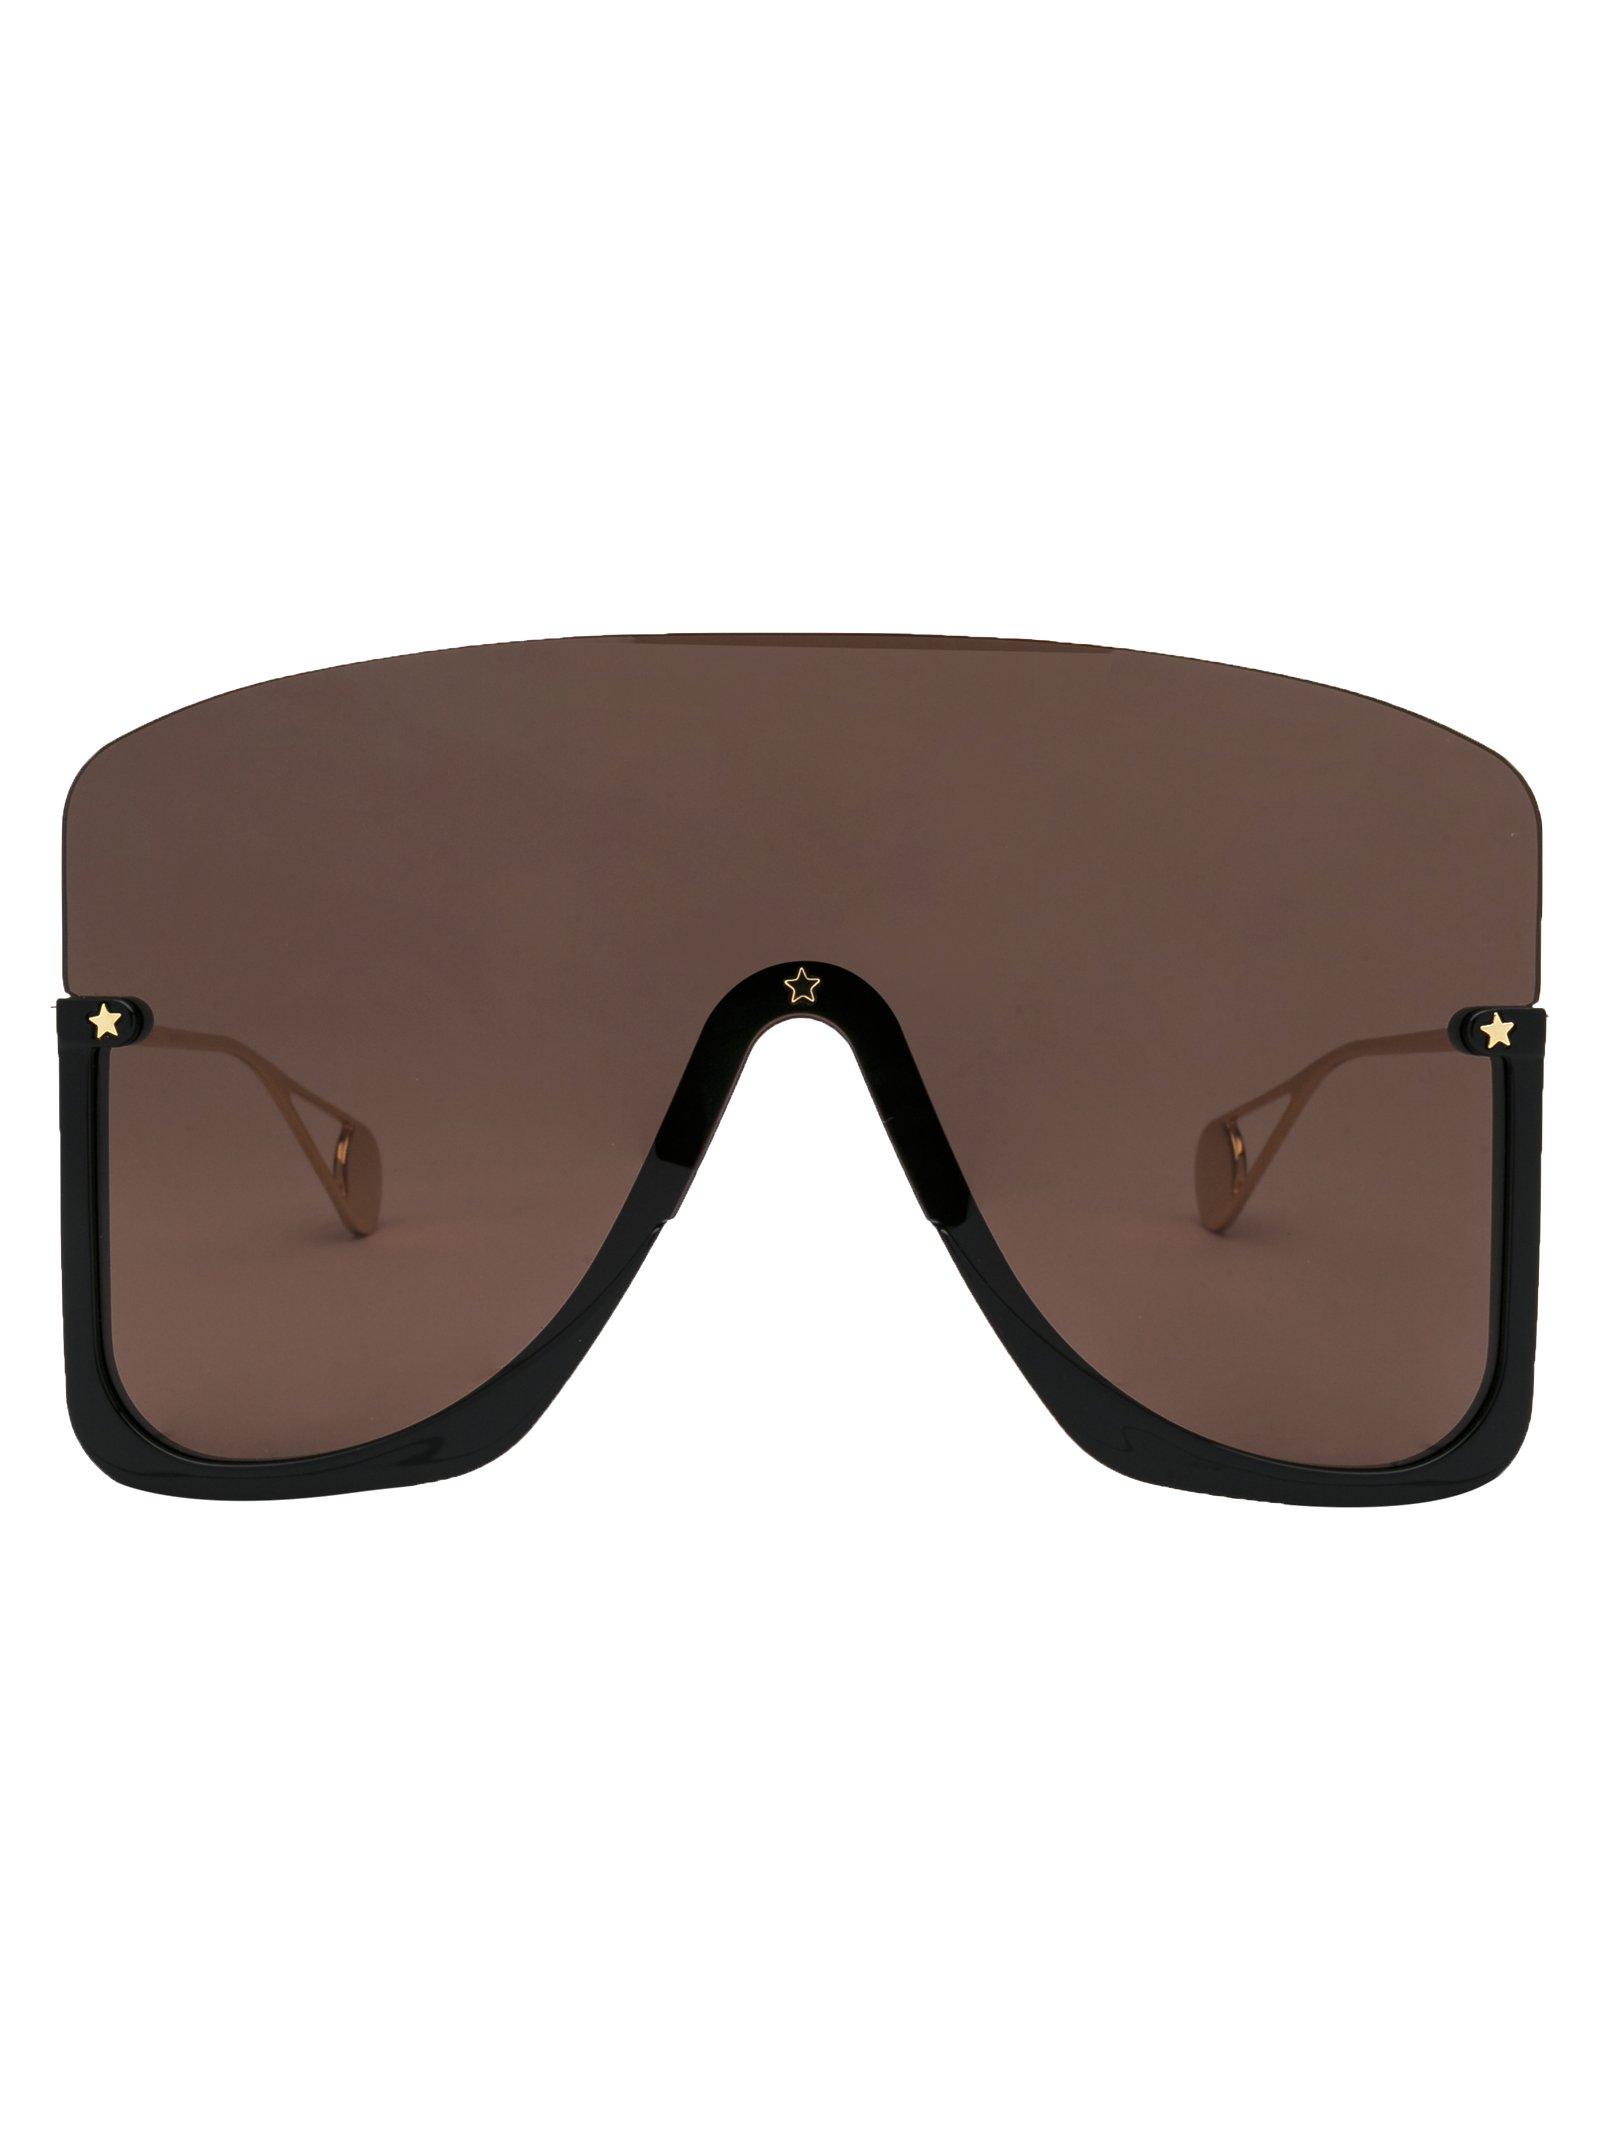 Gucci Open Visor Sunglasses in Black - Lyst